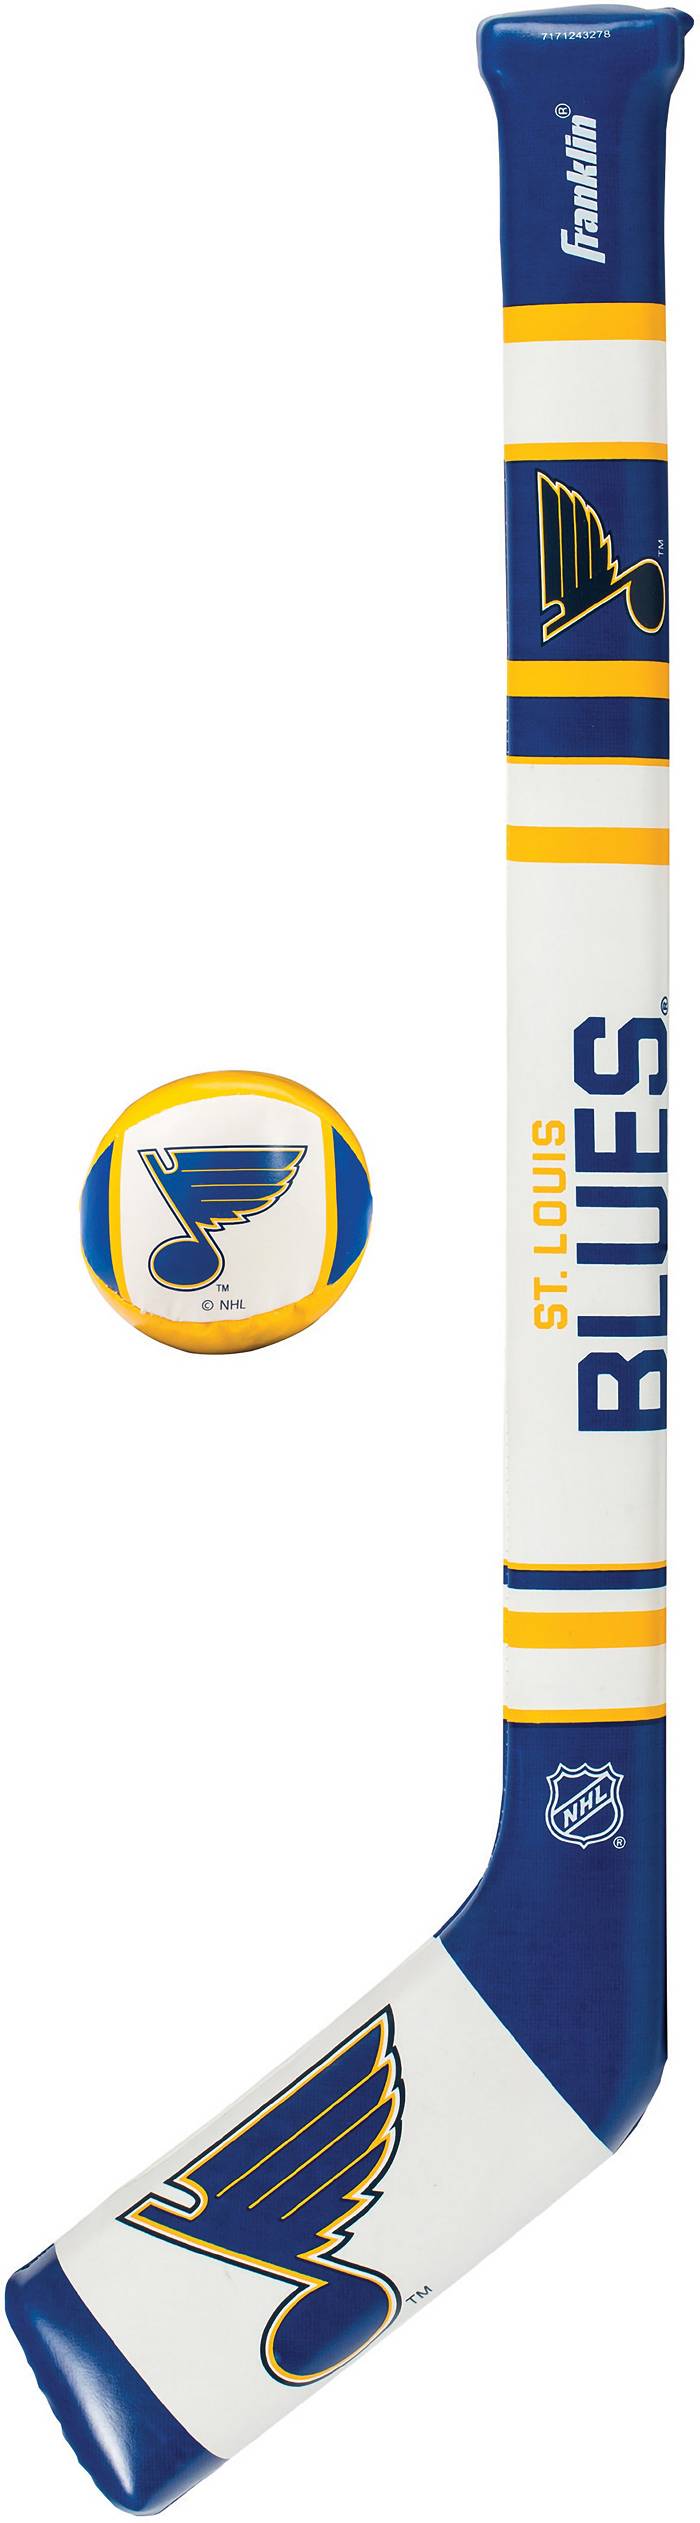 St. Louis Blues Hockey  St louis blues hockey, Blues, St louis blues